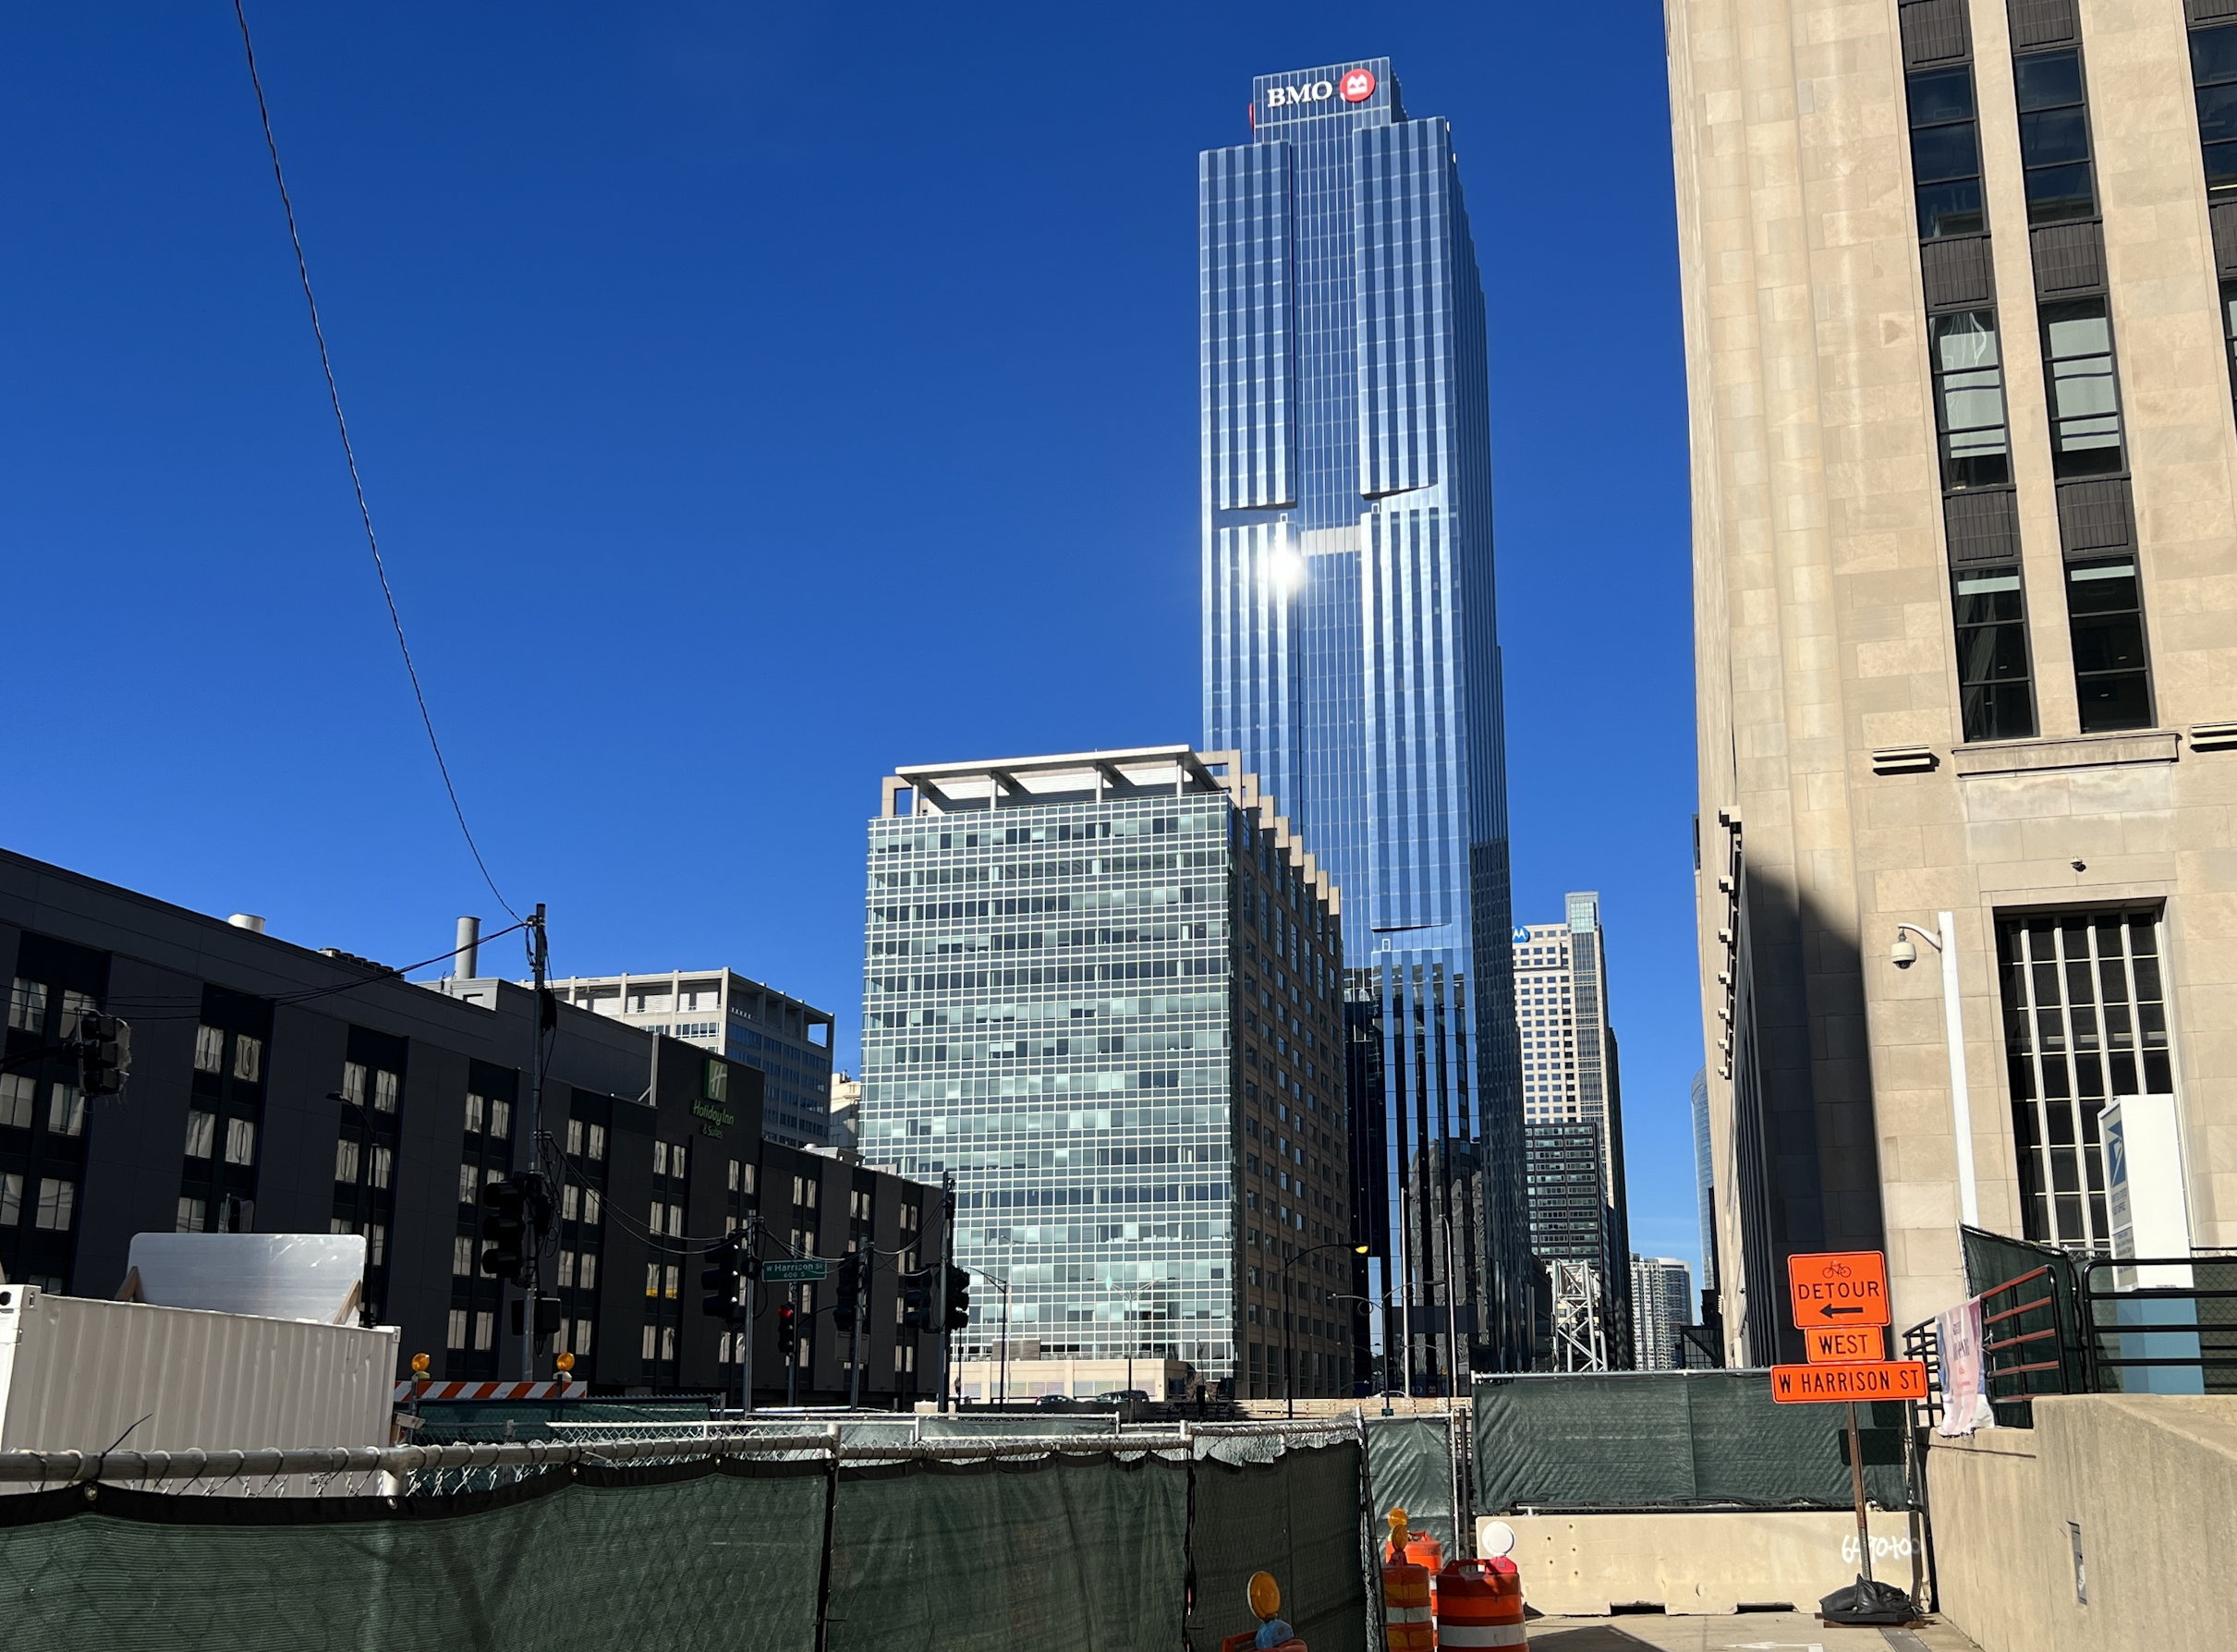 Blick vom Postgebäude aus auf die Baustellen rundherum, dahinter der riesige Büroturm der BMO-Bank vor blauem Himmel